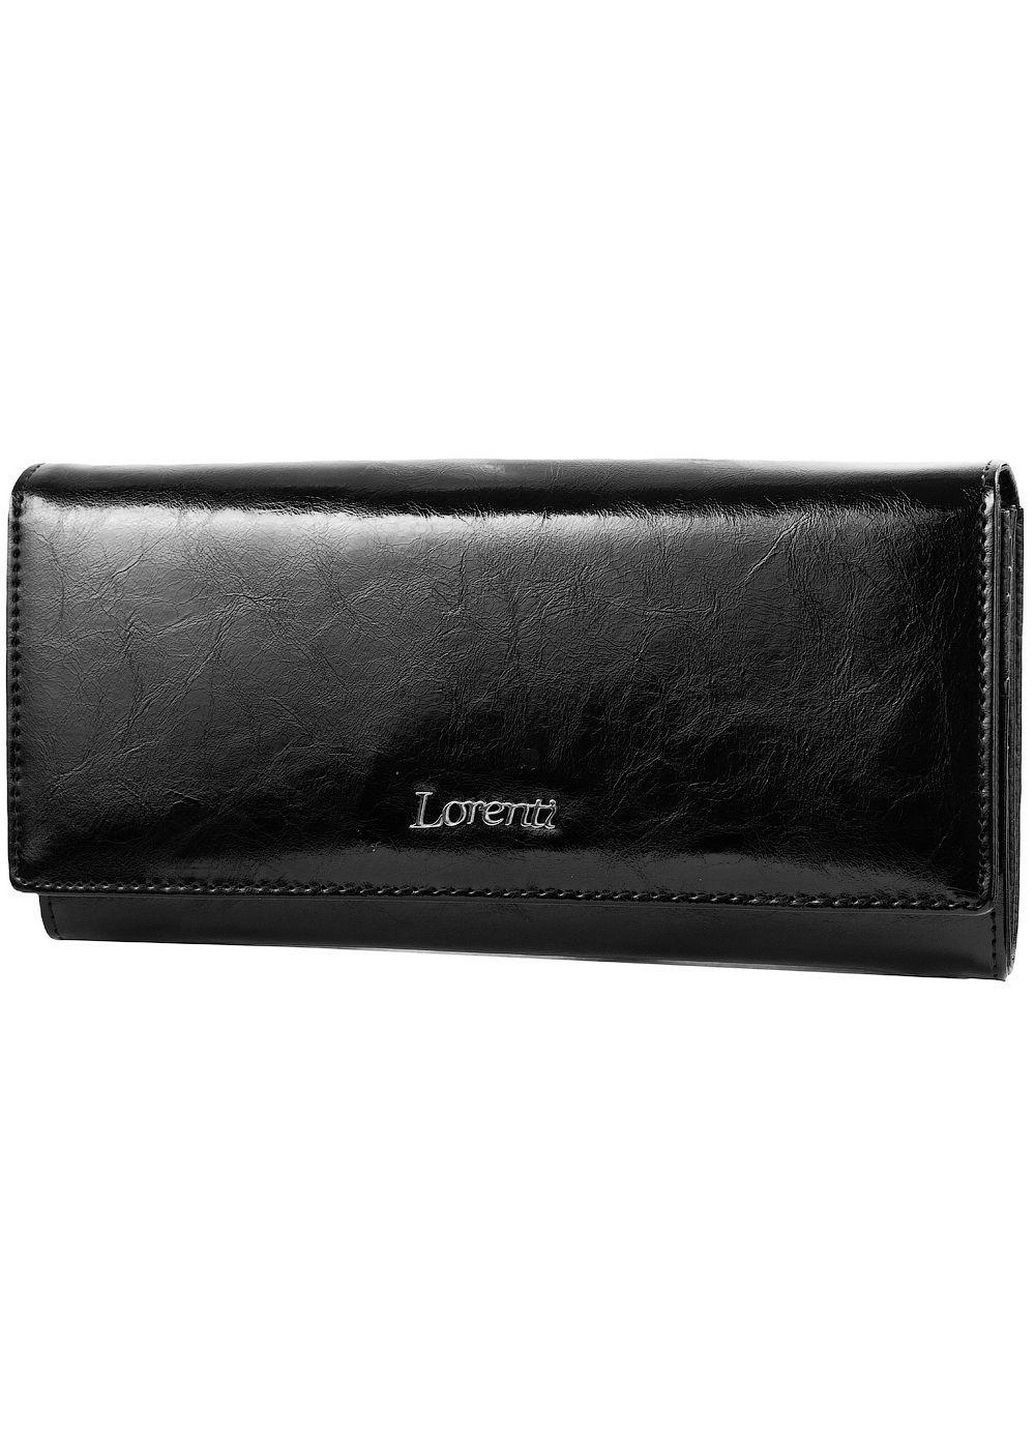 Жіночий шкіряний гаманець Lorenti (282585981)